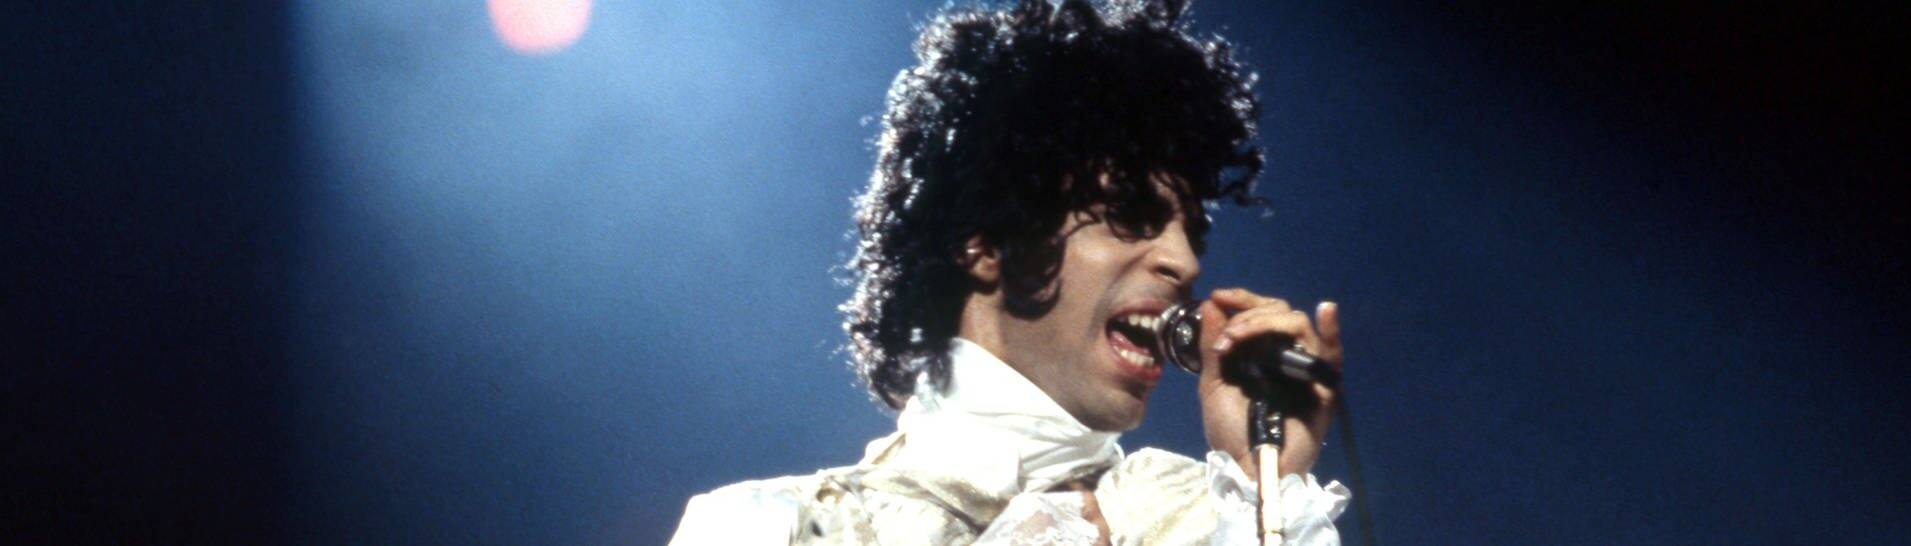 Popstar Prince 1984 bei einem Live-Konzert in Michigan